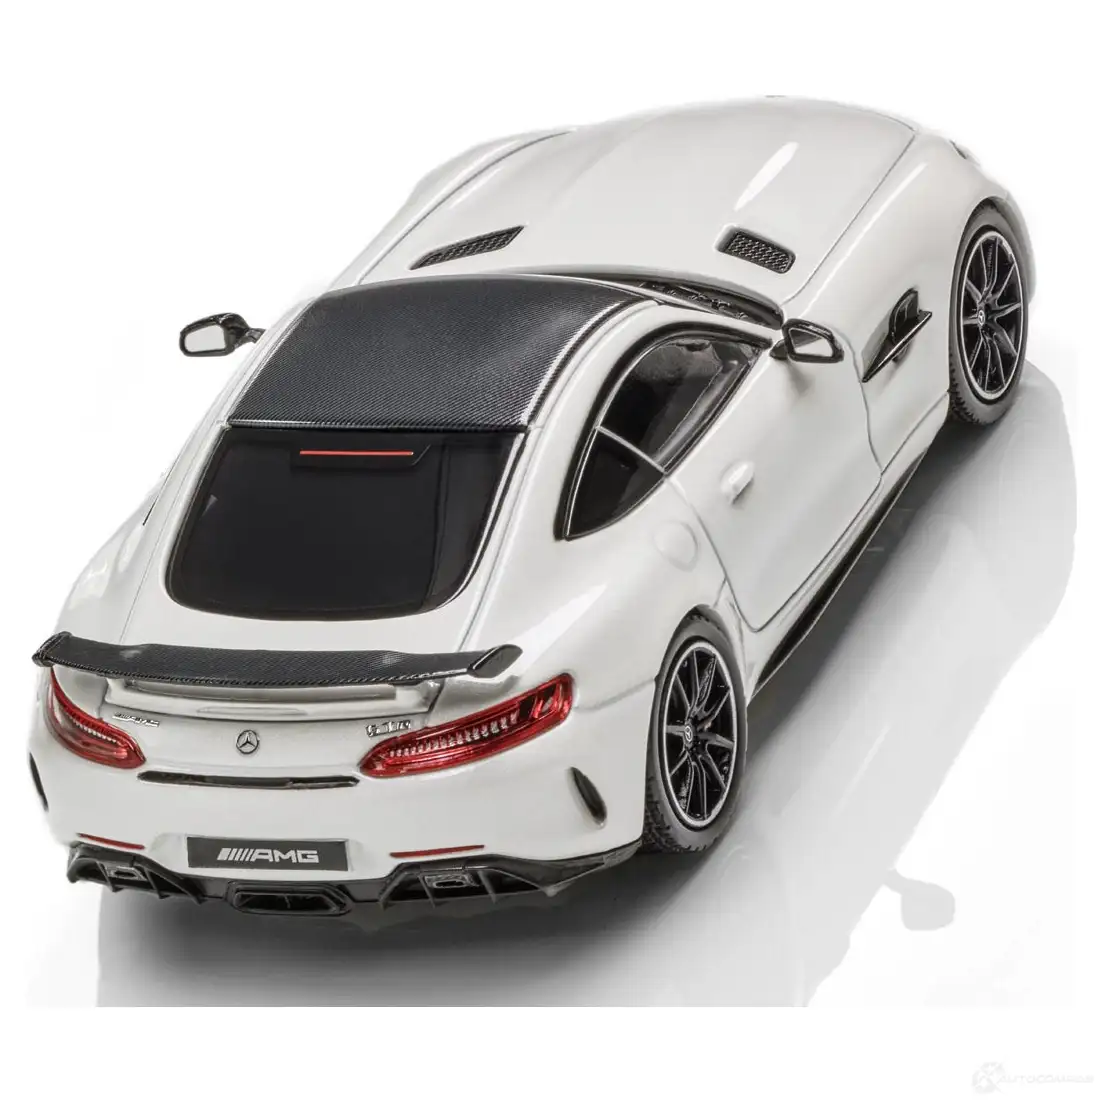 Модель автомобиля Mercedes-AMG GT R купе MERCEDES-BENZ b66960442 PXECN 4 1438169618 изображение 1